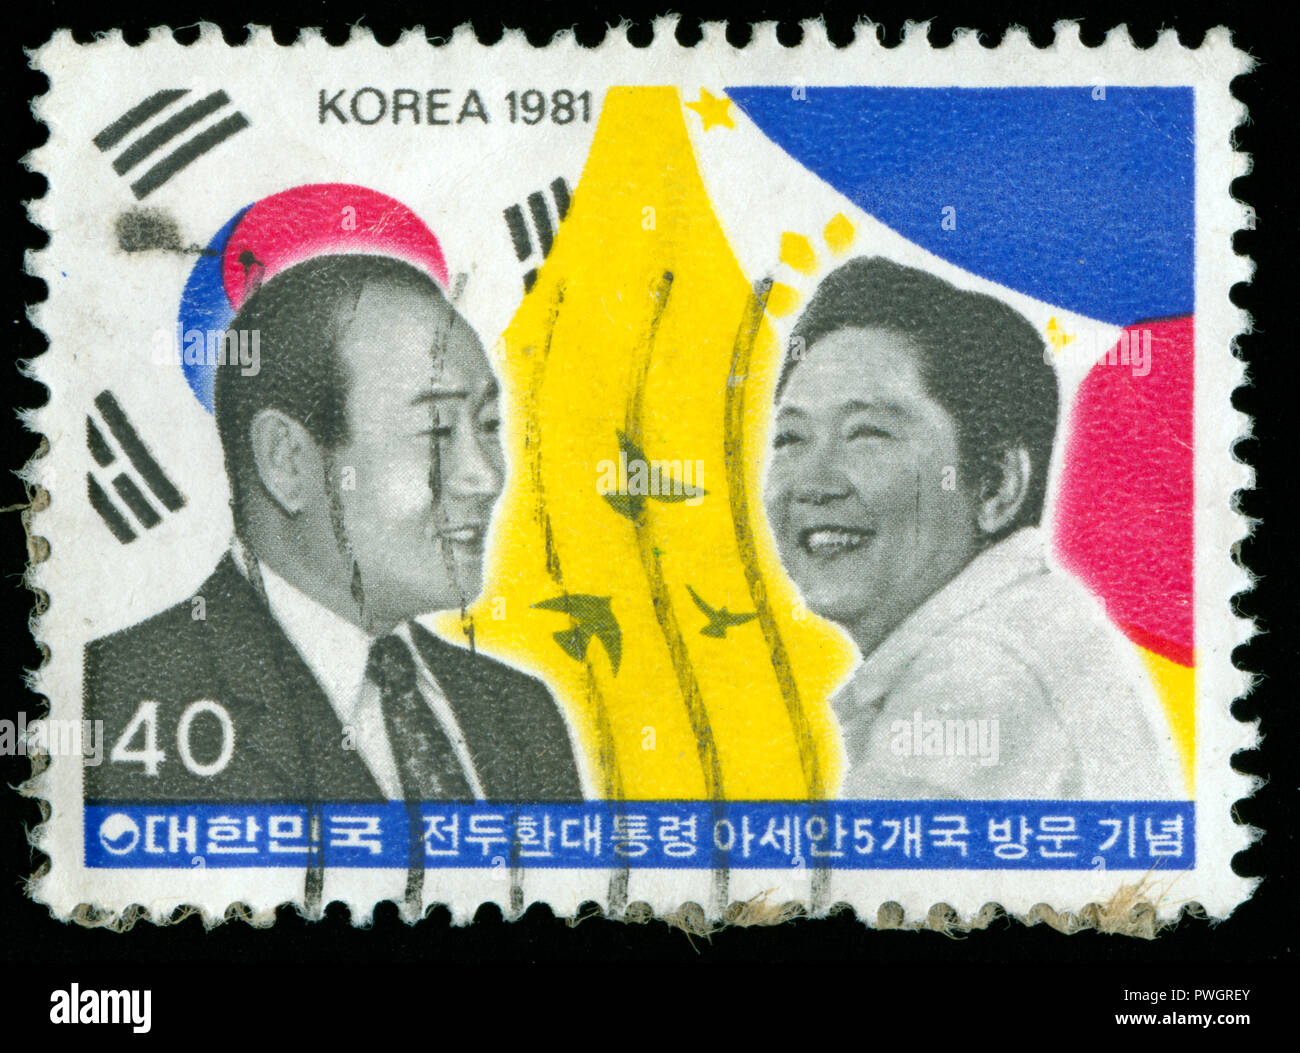 Timbre cachet de la Corée du Sud dans la visite du Président aux pays de l'ASEAN série émise en 1981 Banque D'Images